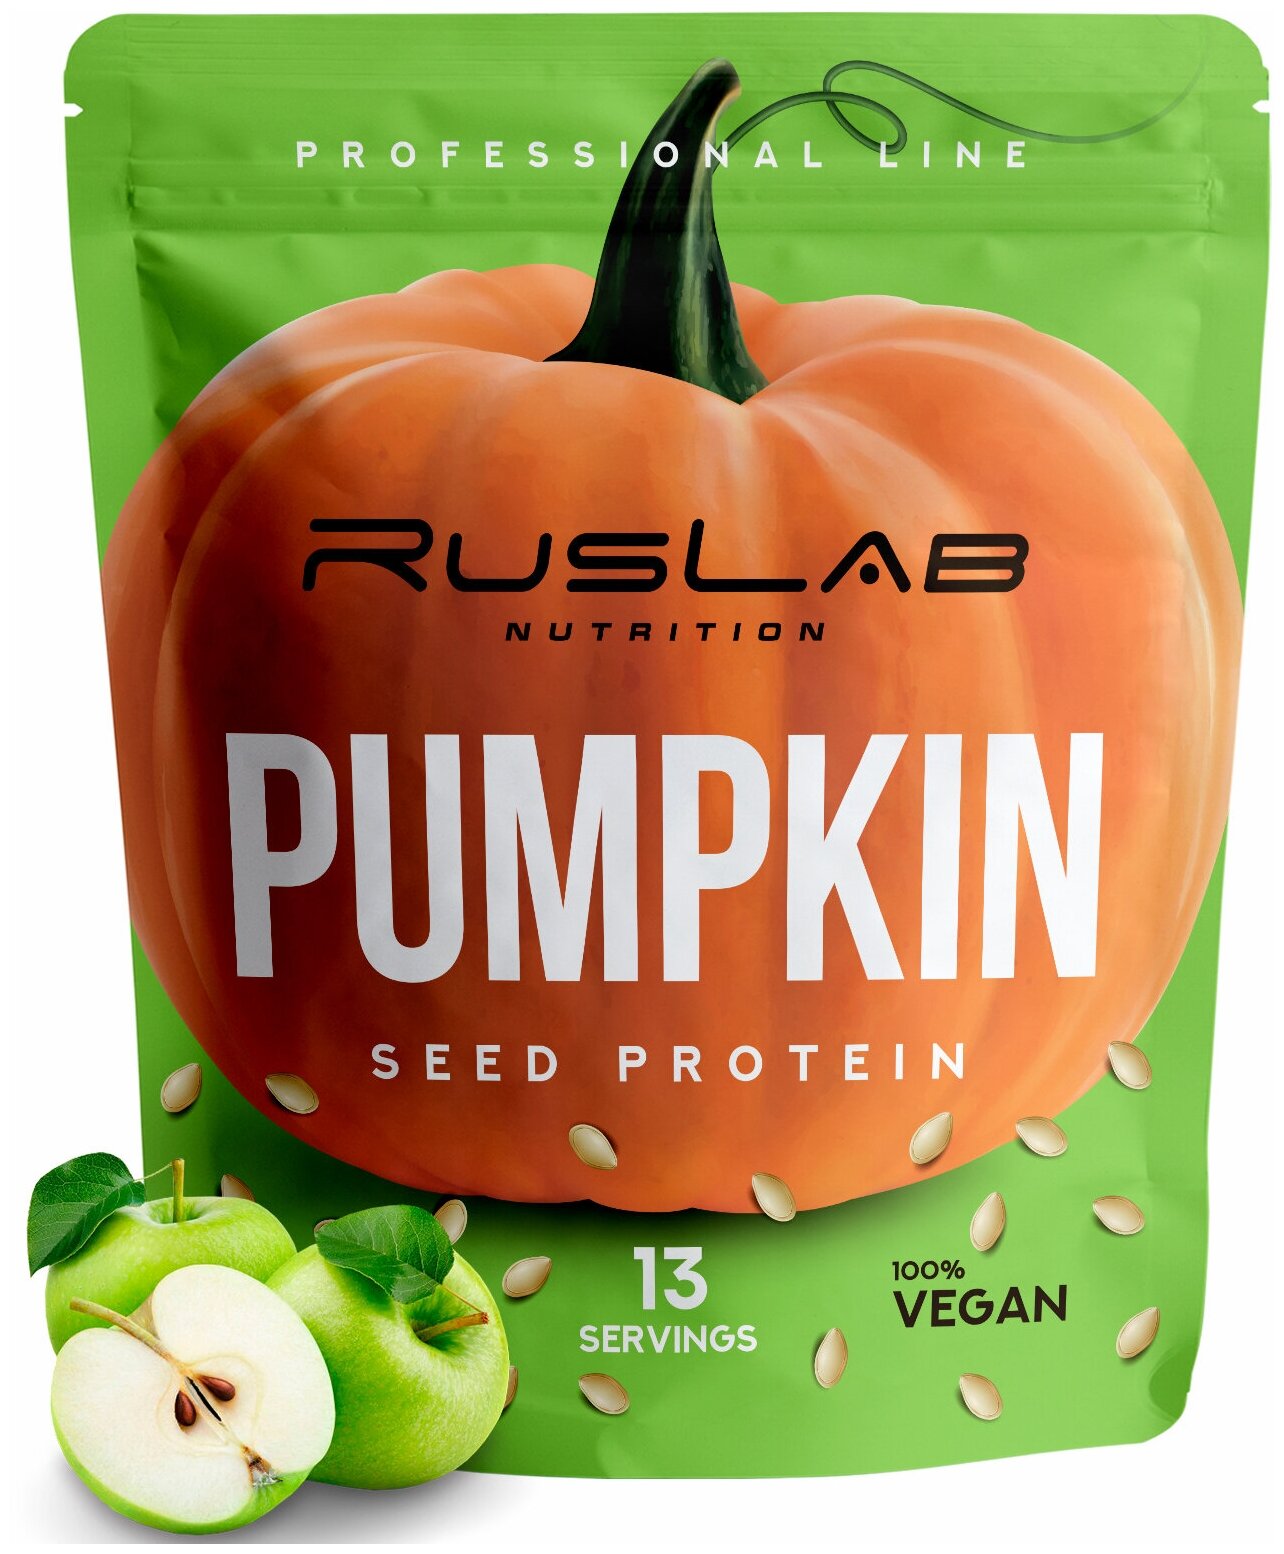 PUMPKIN SEED PROTEIN-протеин тыквенный, растительный протеин, веганский протеин, без ГМО (416 гр), вкус зеленое яблоко